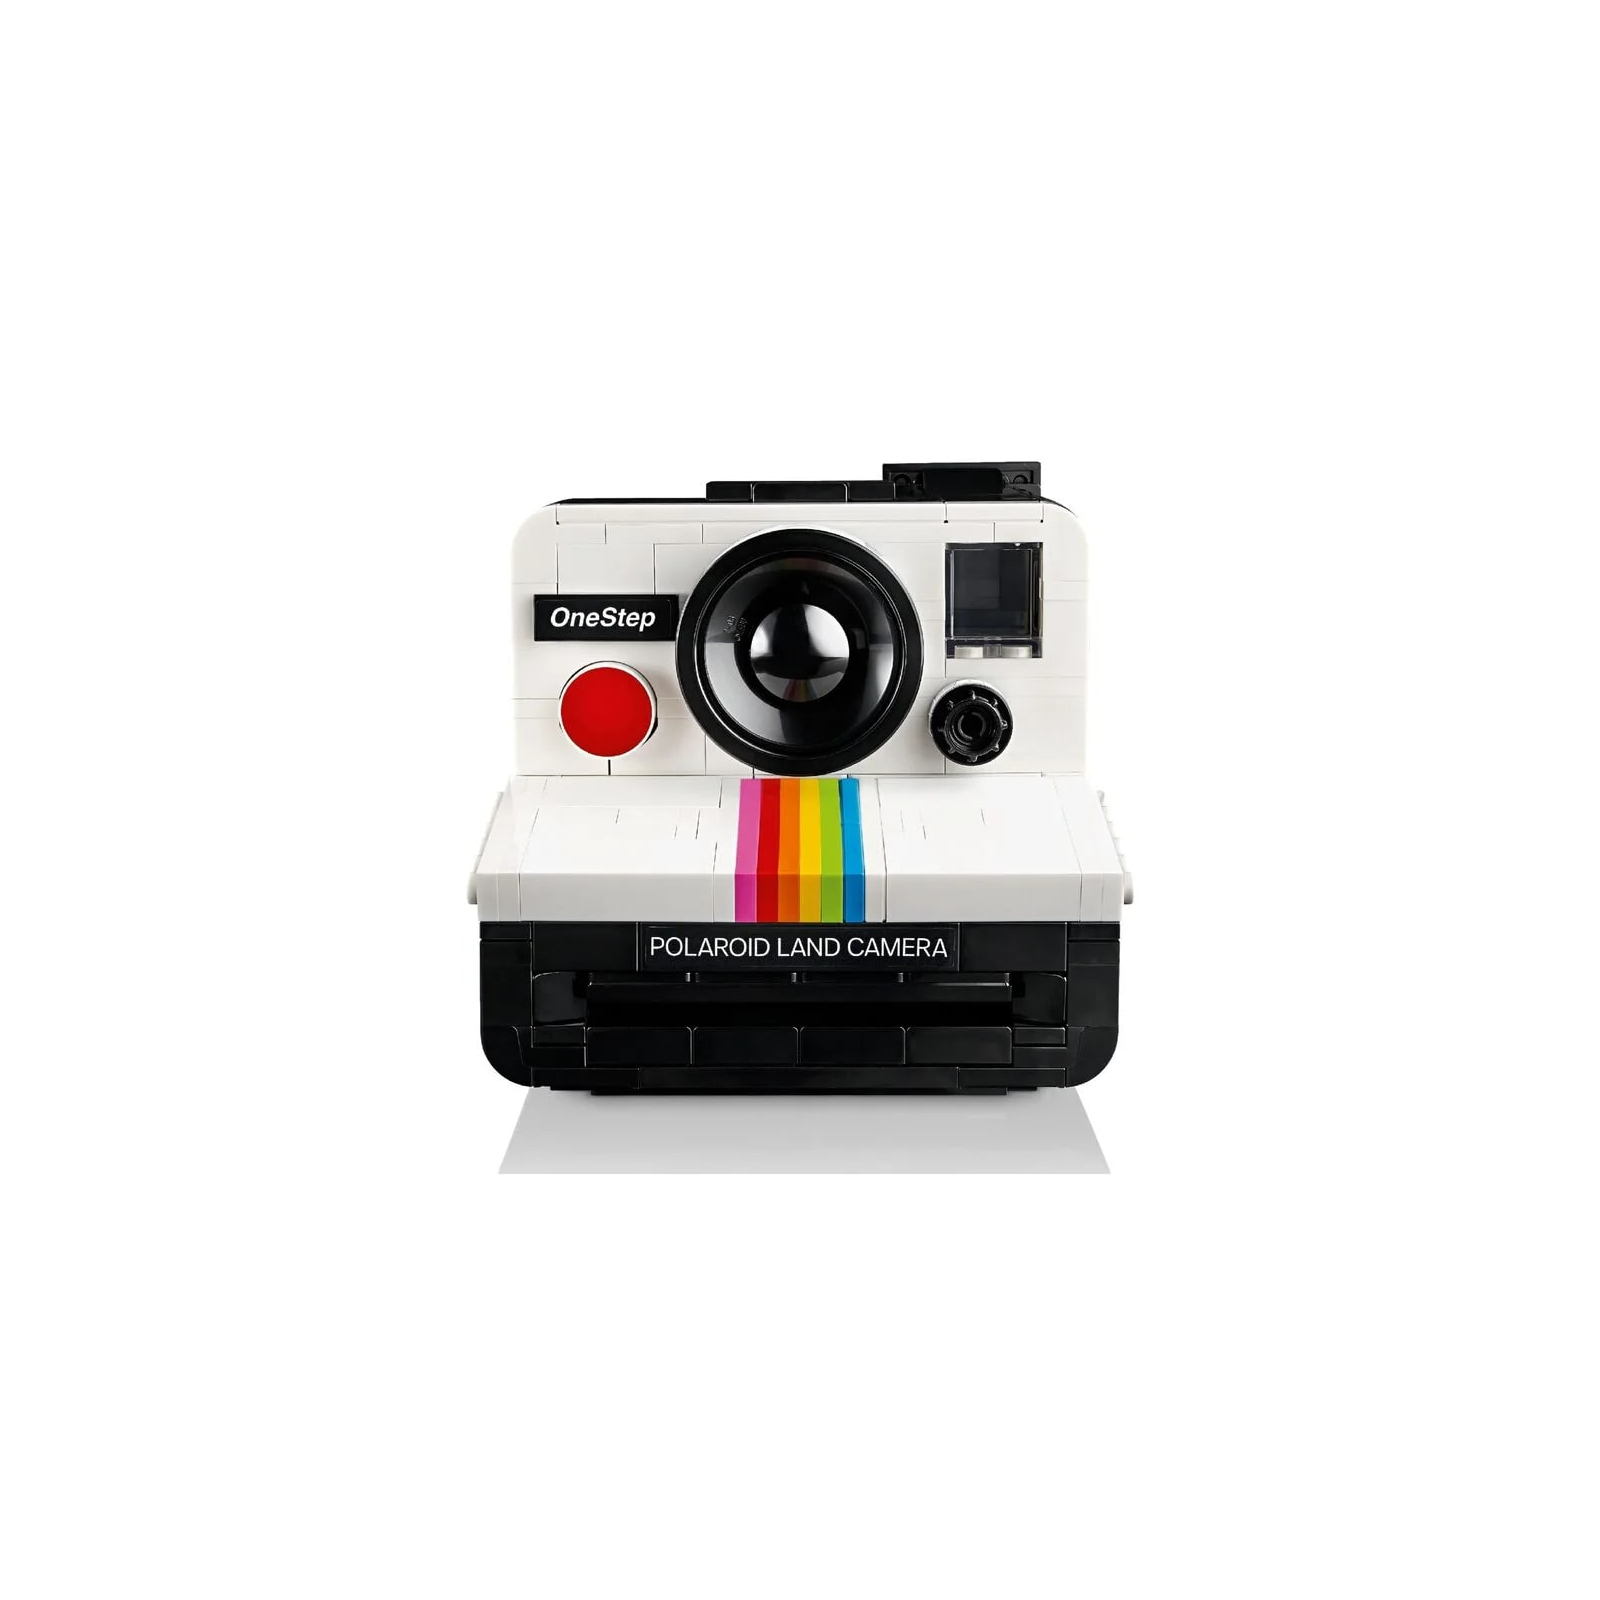 Конструктор LEGO Ideas Фотоаппарат Polaroid OneStep SX-70 516 деталей (21345-) изображение 8